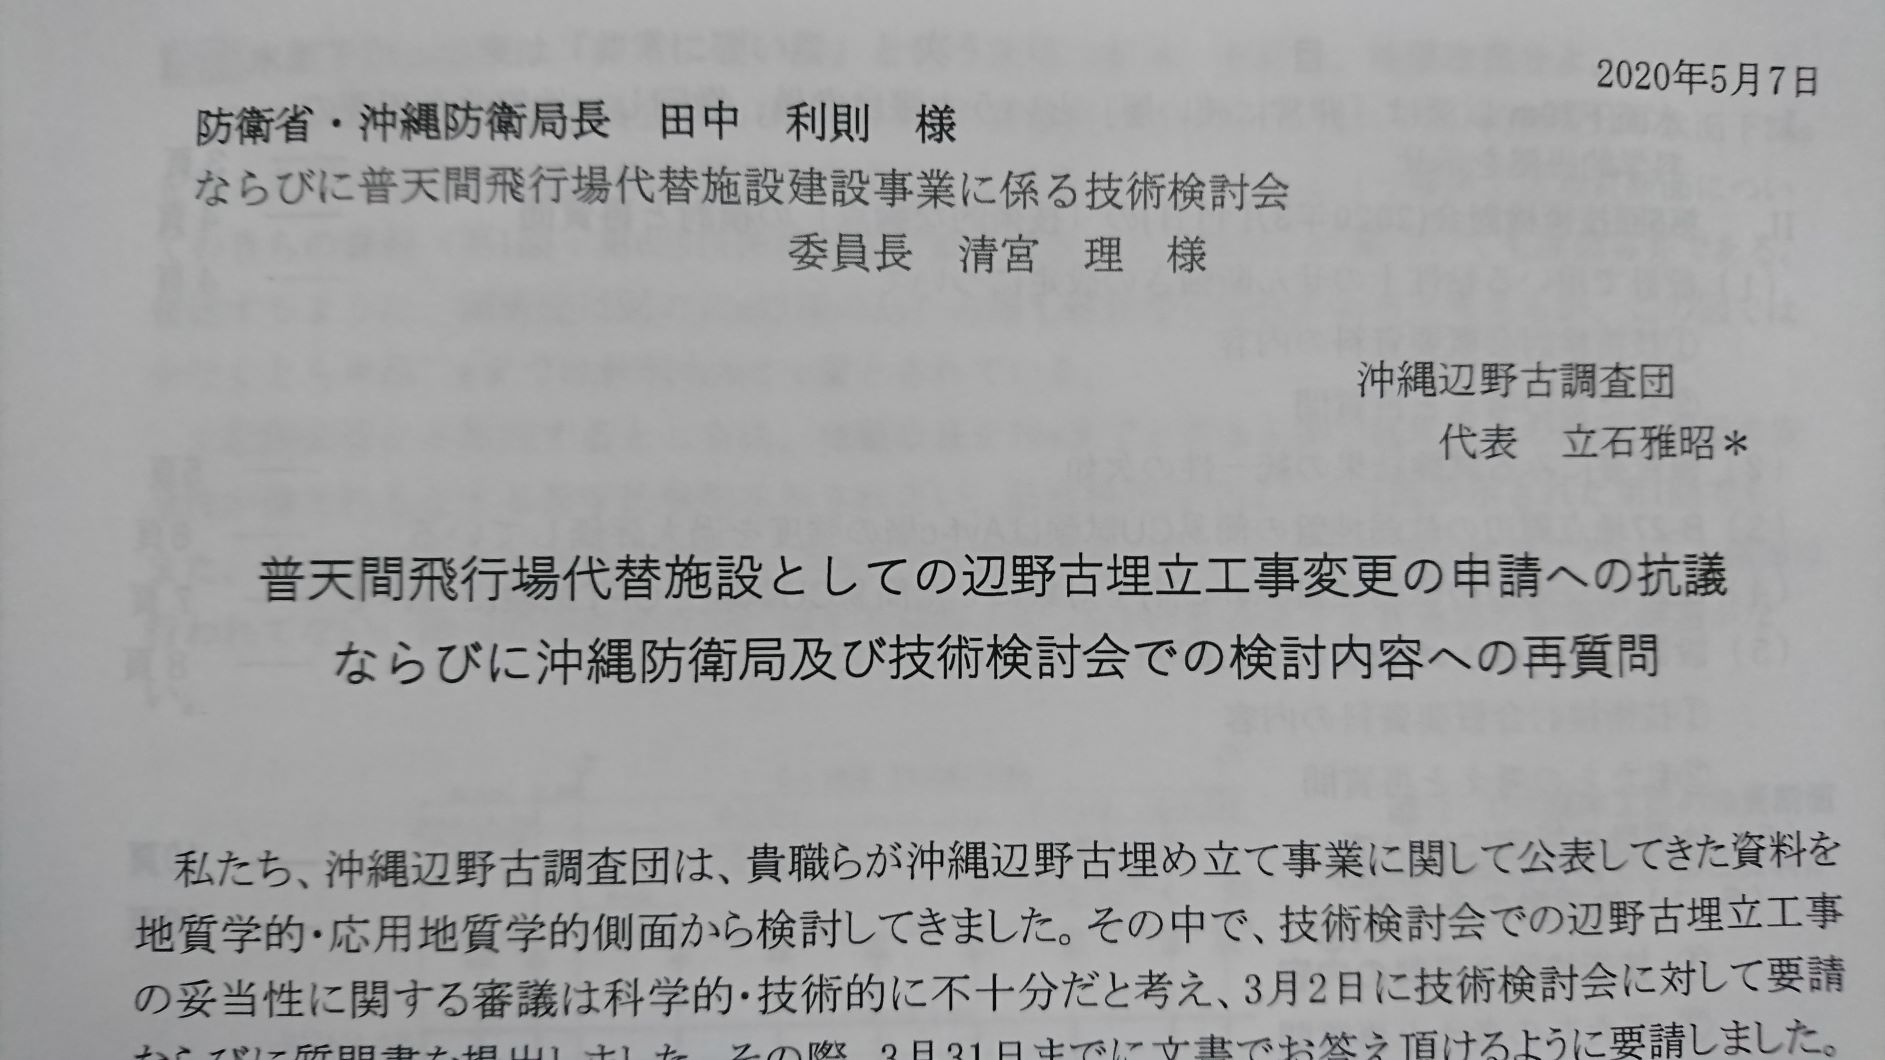 https://www.inoue-satoshi.com/diary/DSC_0045.JPG